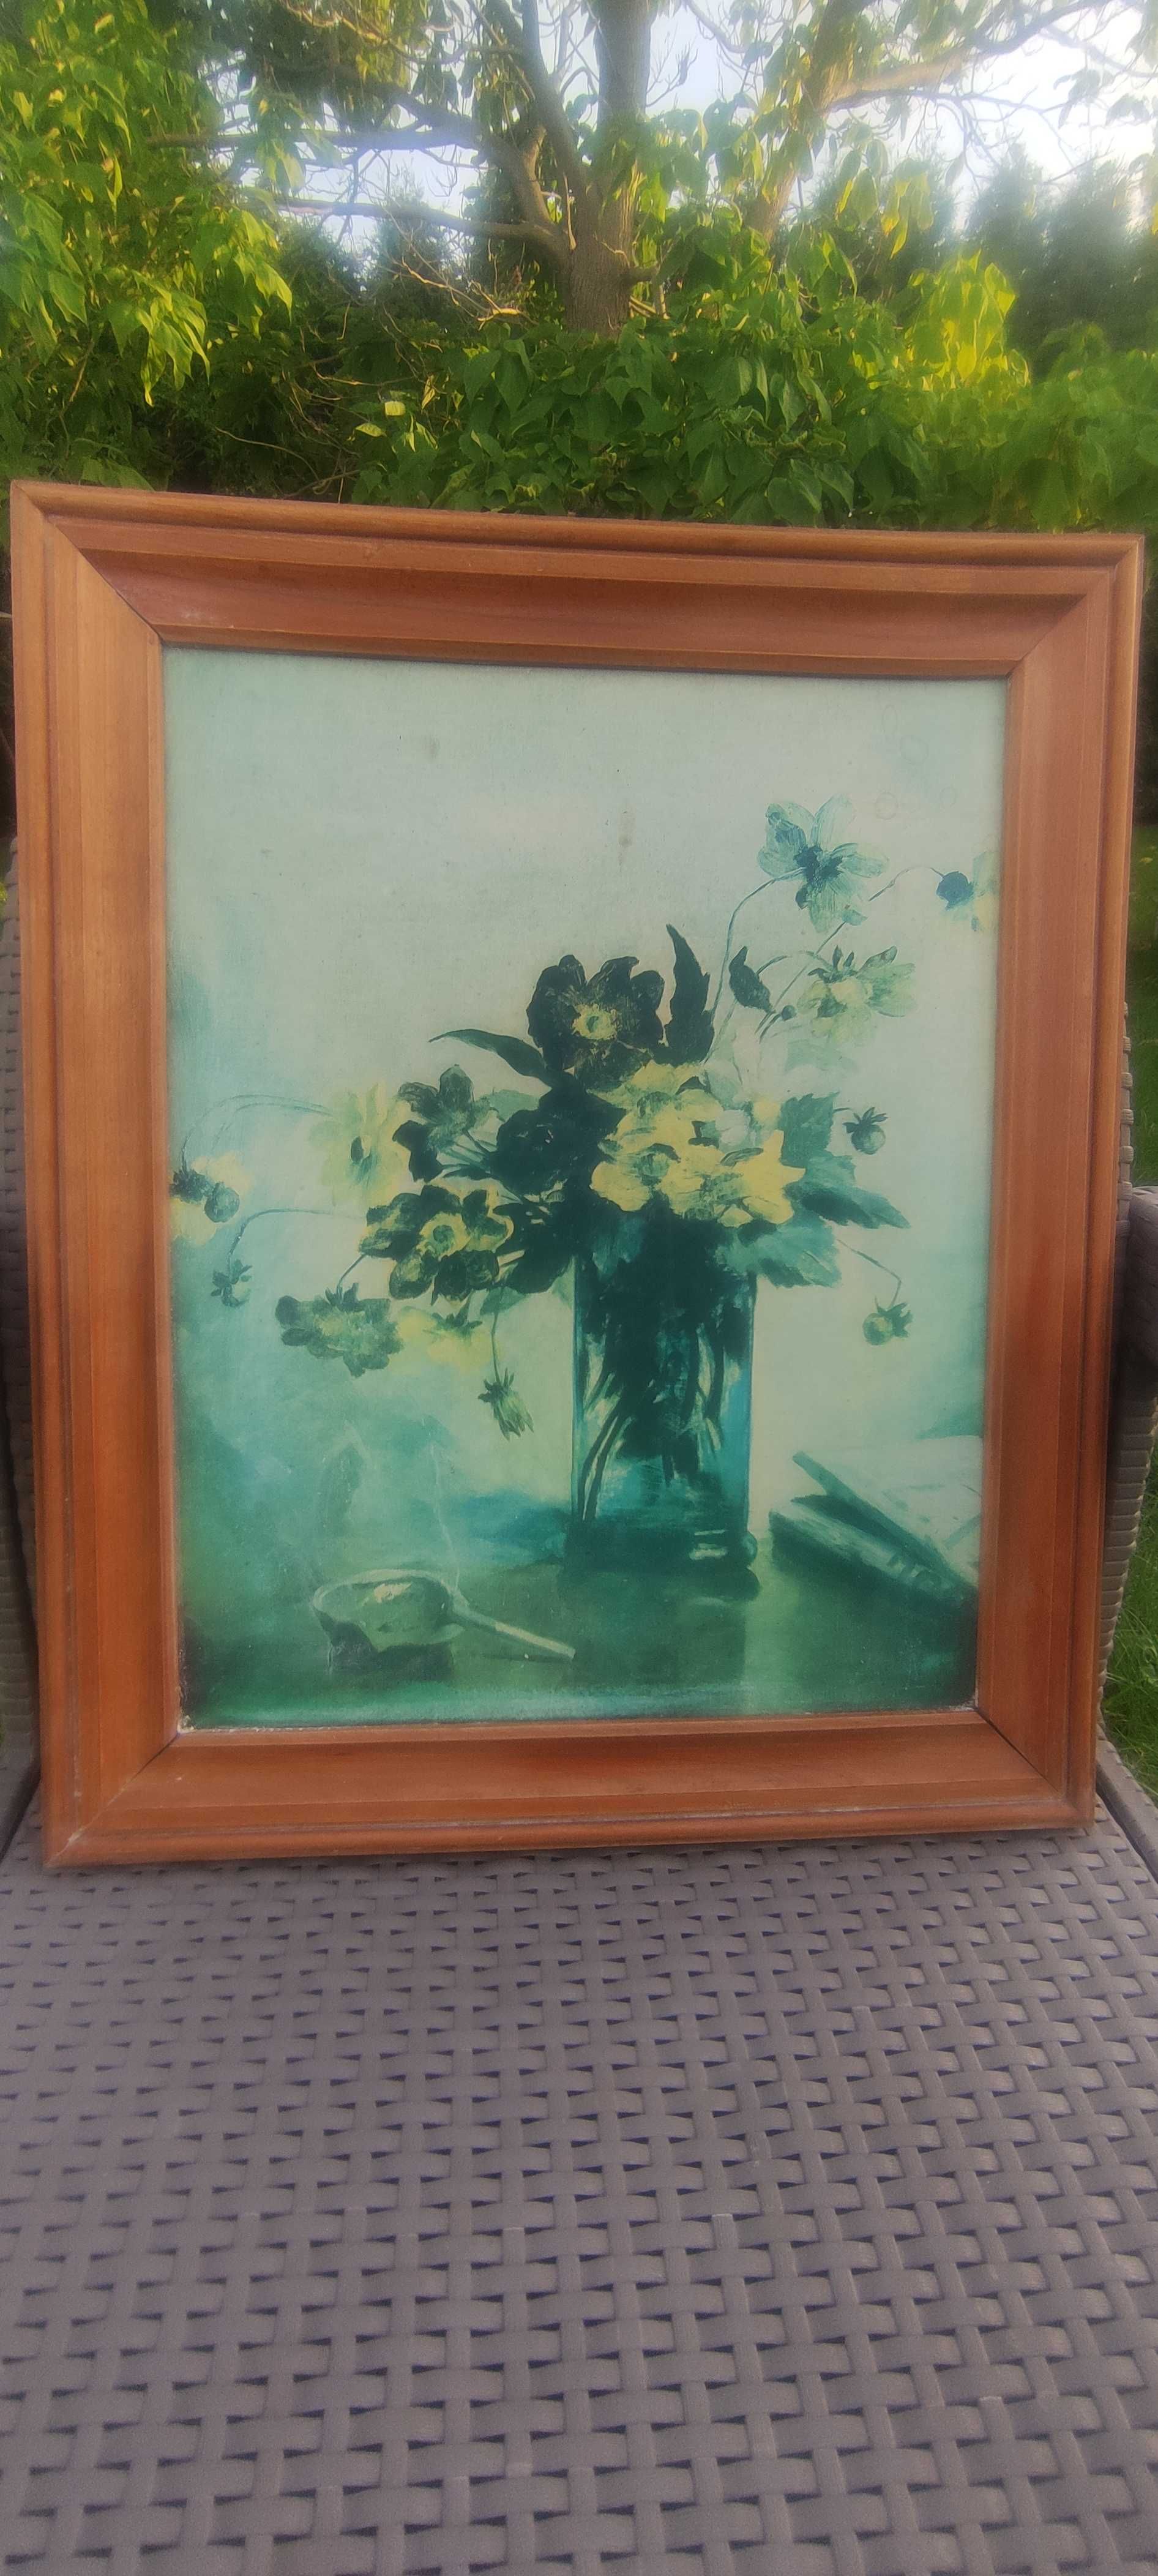 Obraz "Kwiaty w wazonie" Maria Gażycz replika